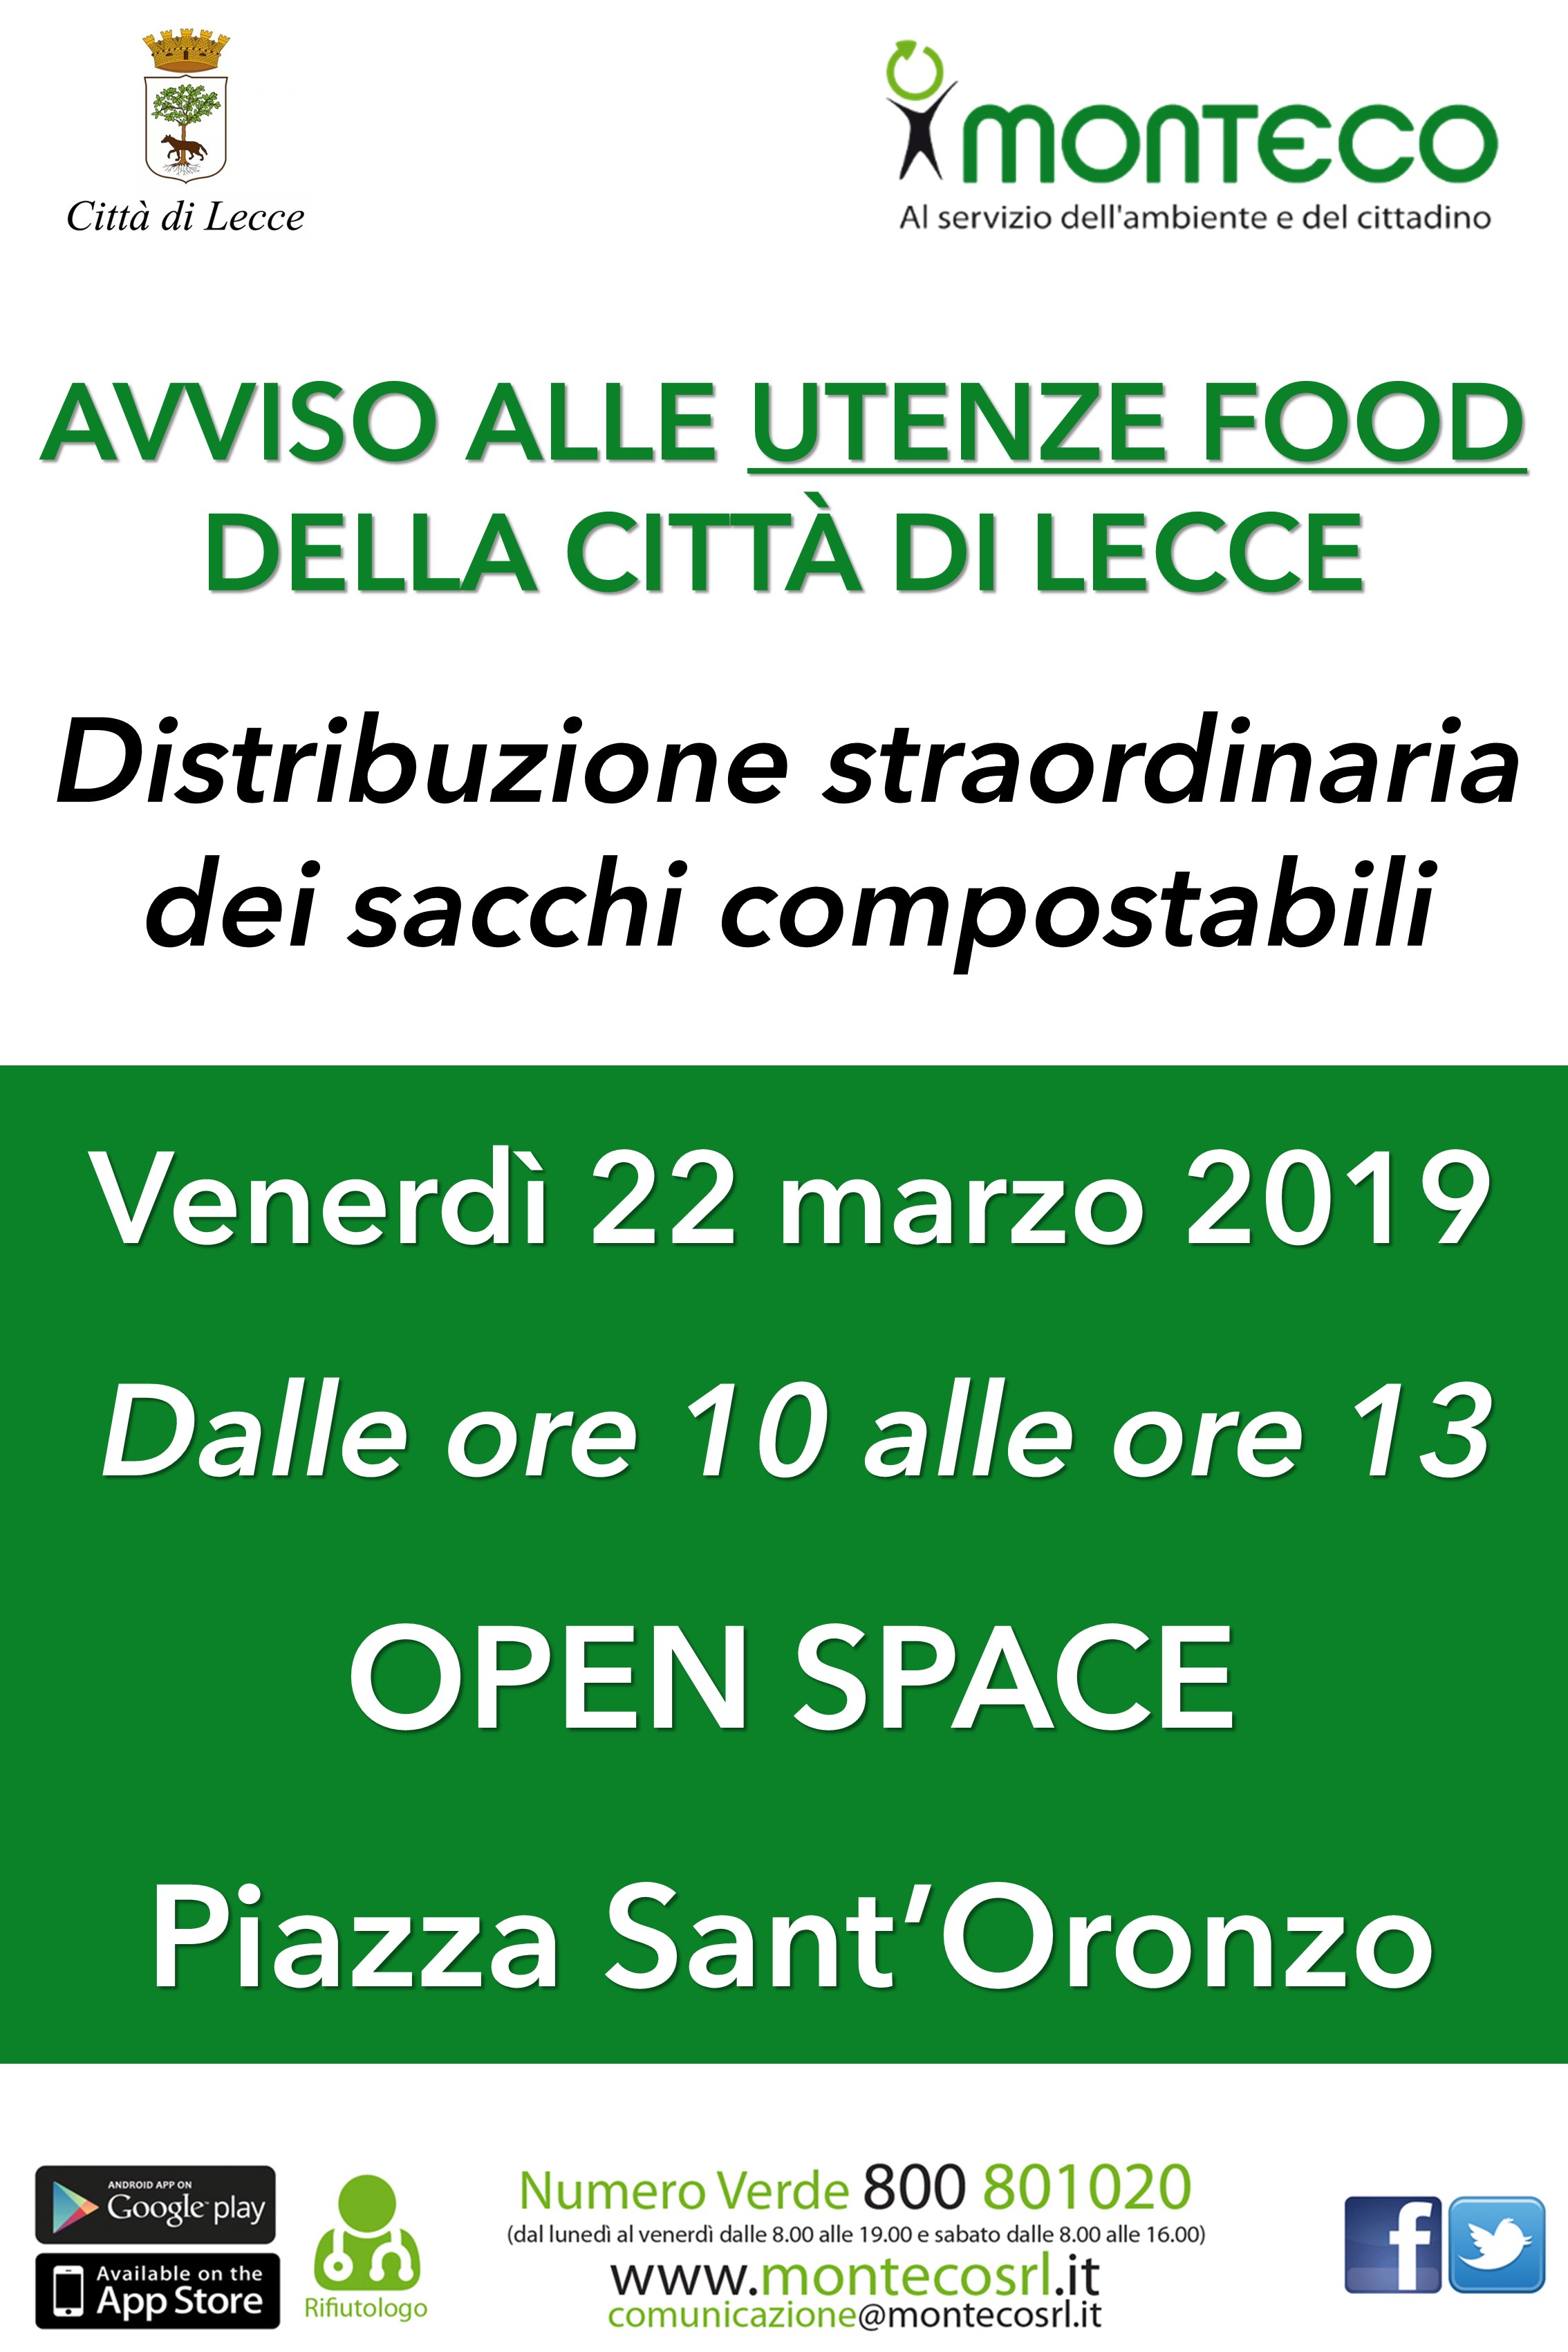 Lecce - Distribuzione straordinaria sacchi compostabili per le utenze food